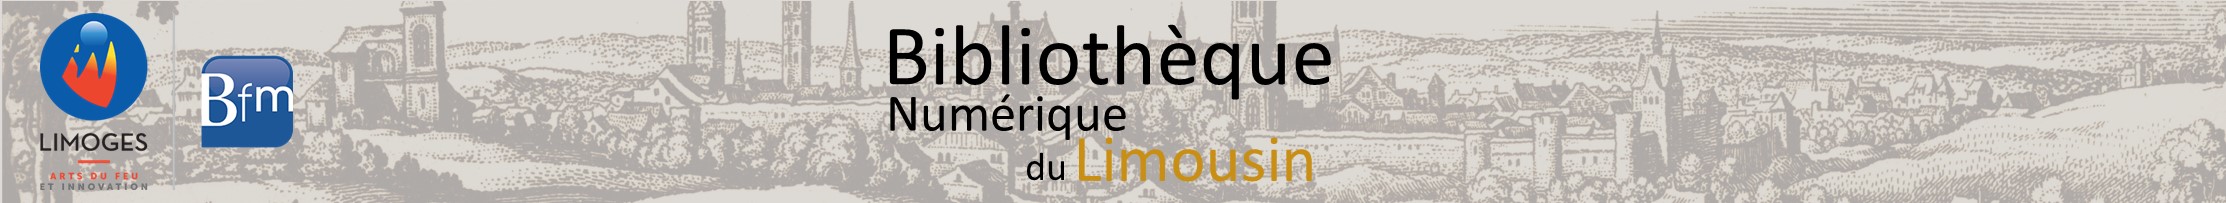 Bibliothèque numérique du Limousin